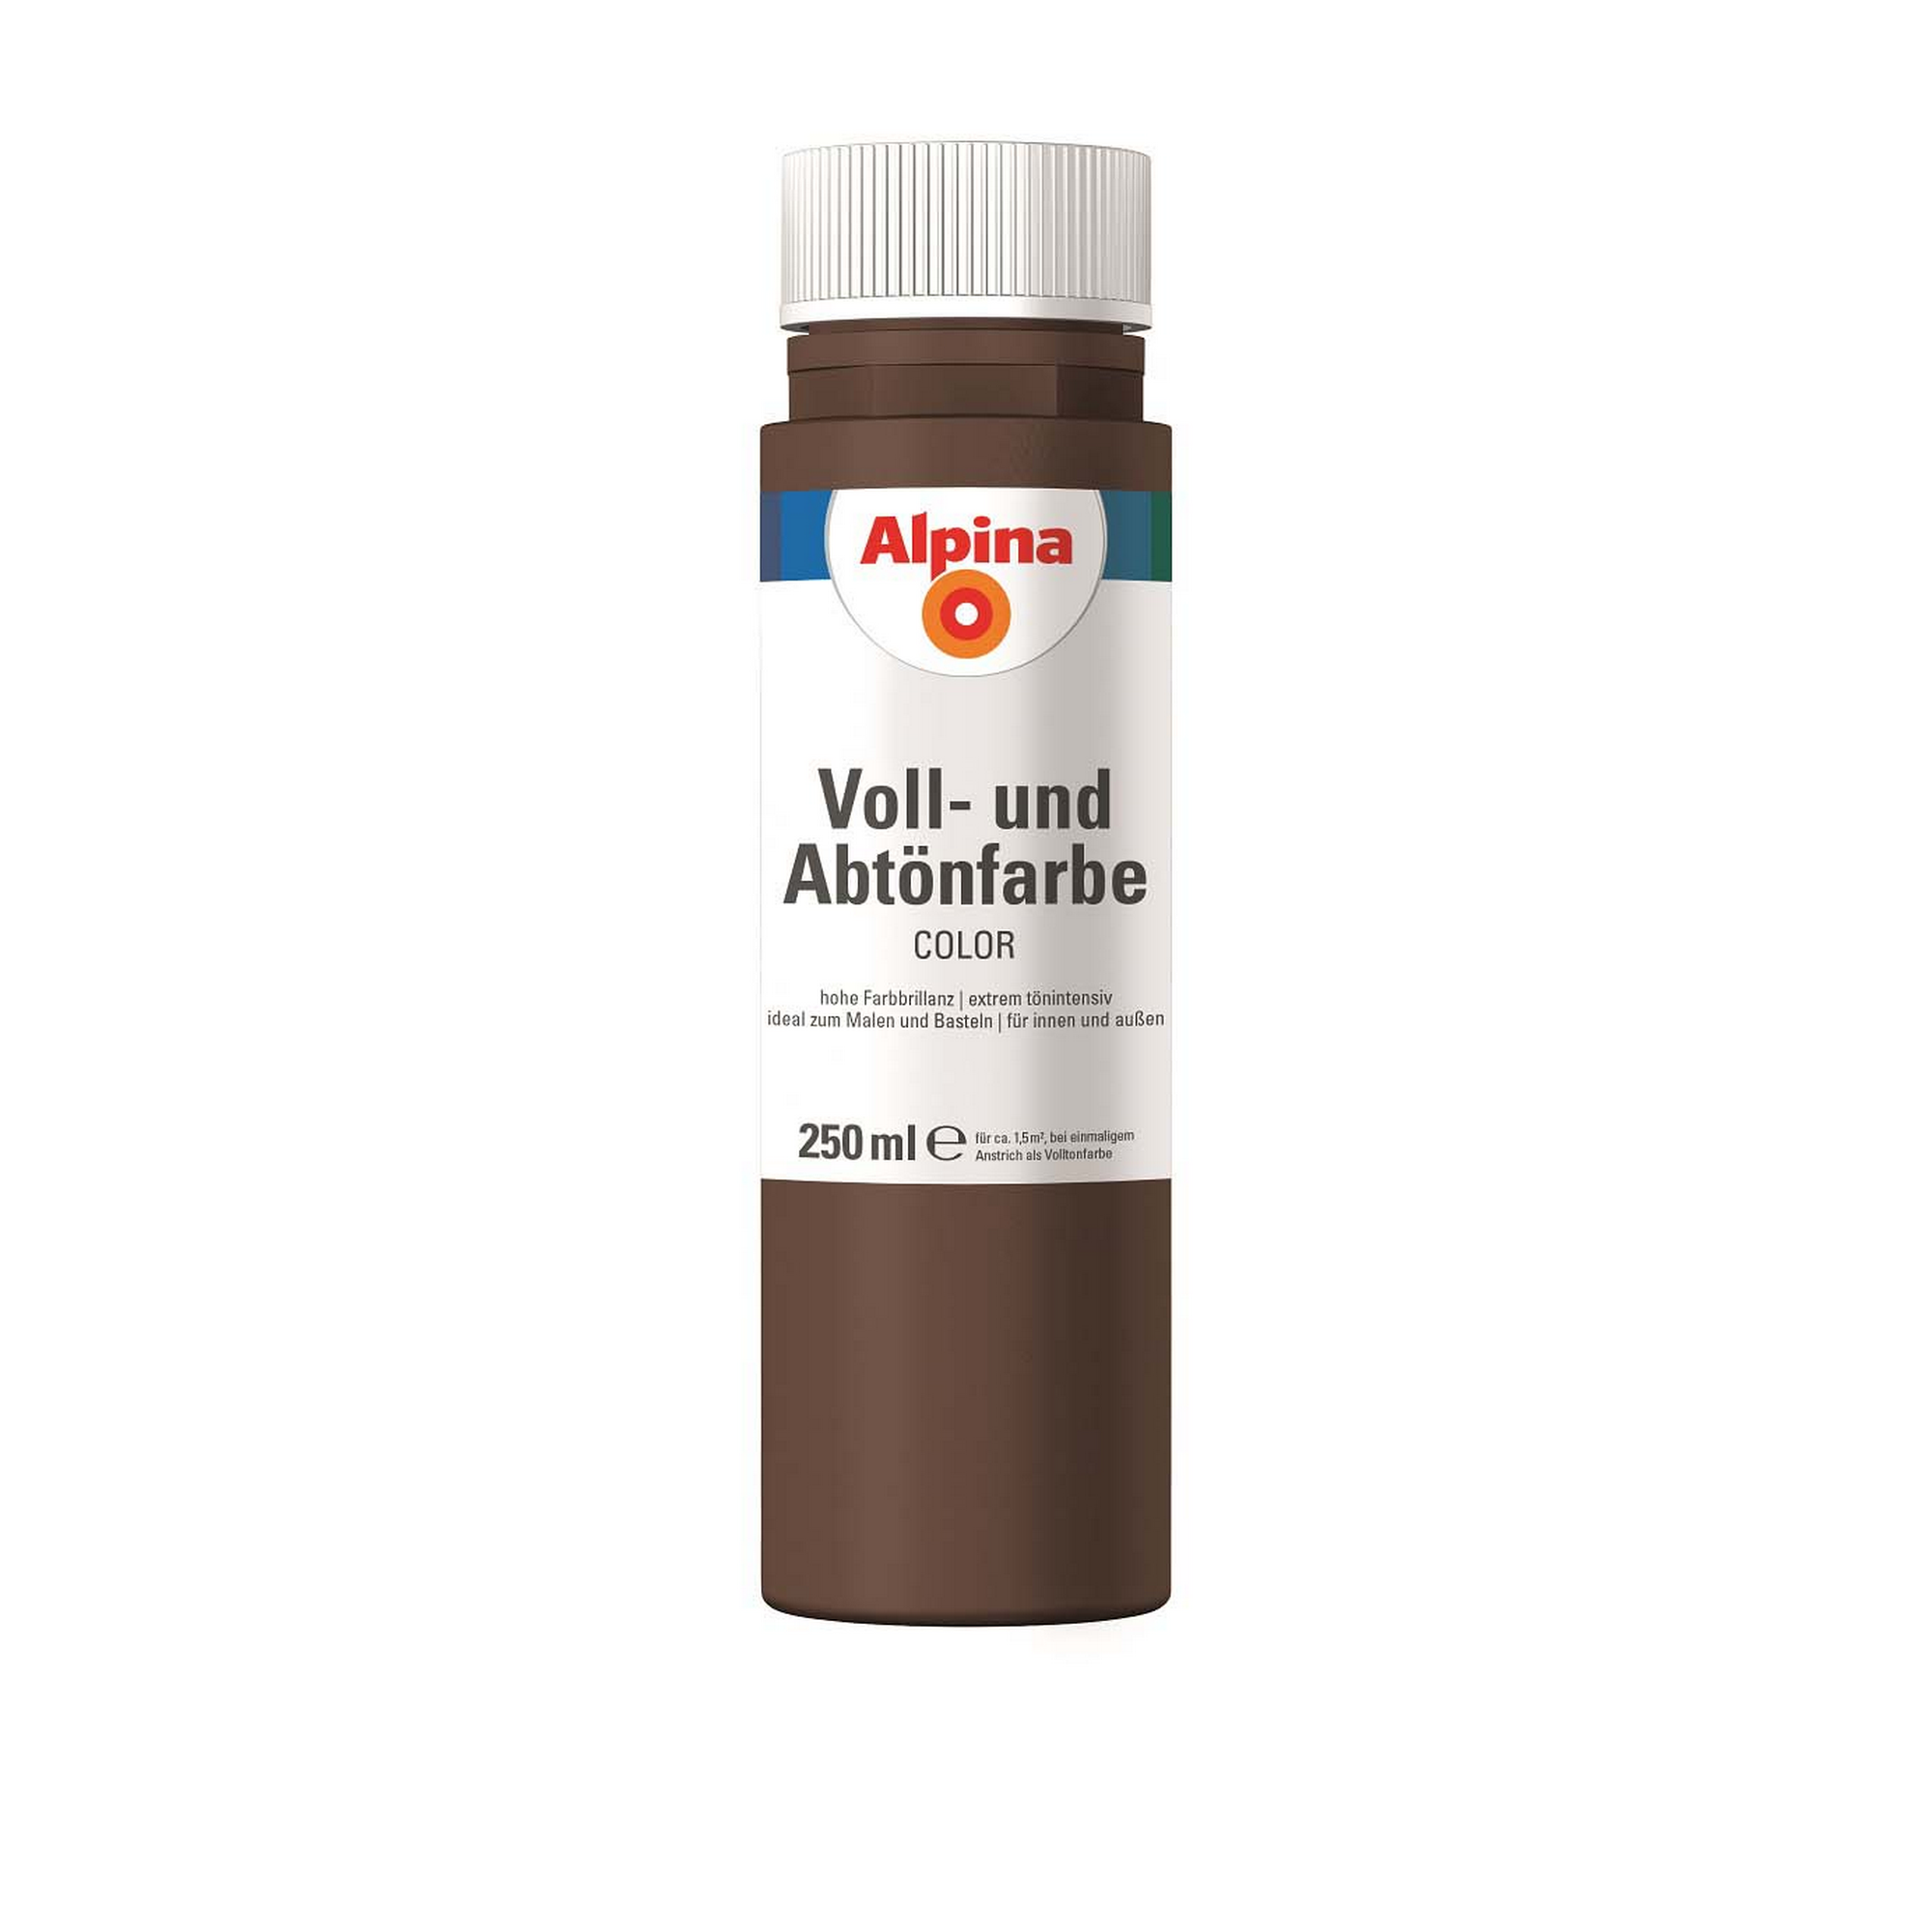 Voll- und Abtönfarbe 'Choco Brown' schokobraun 250 ml + product picture